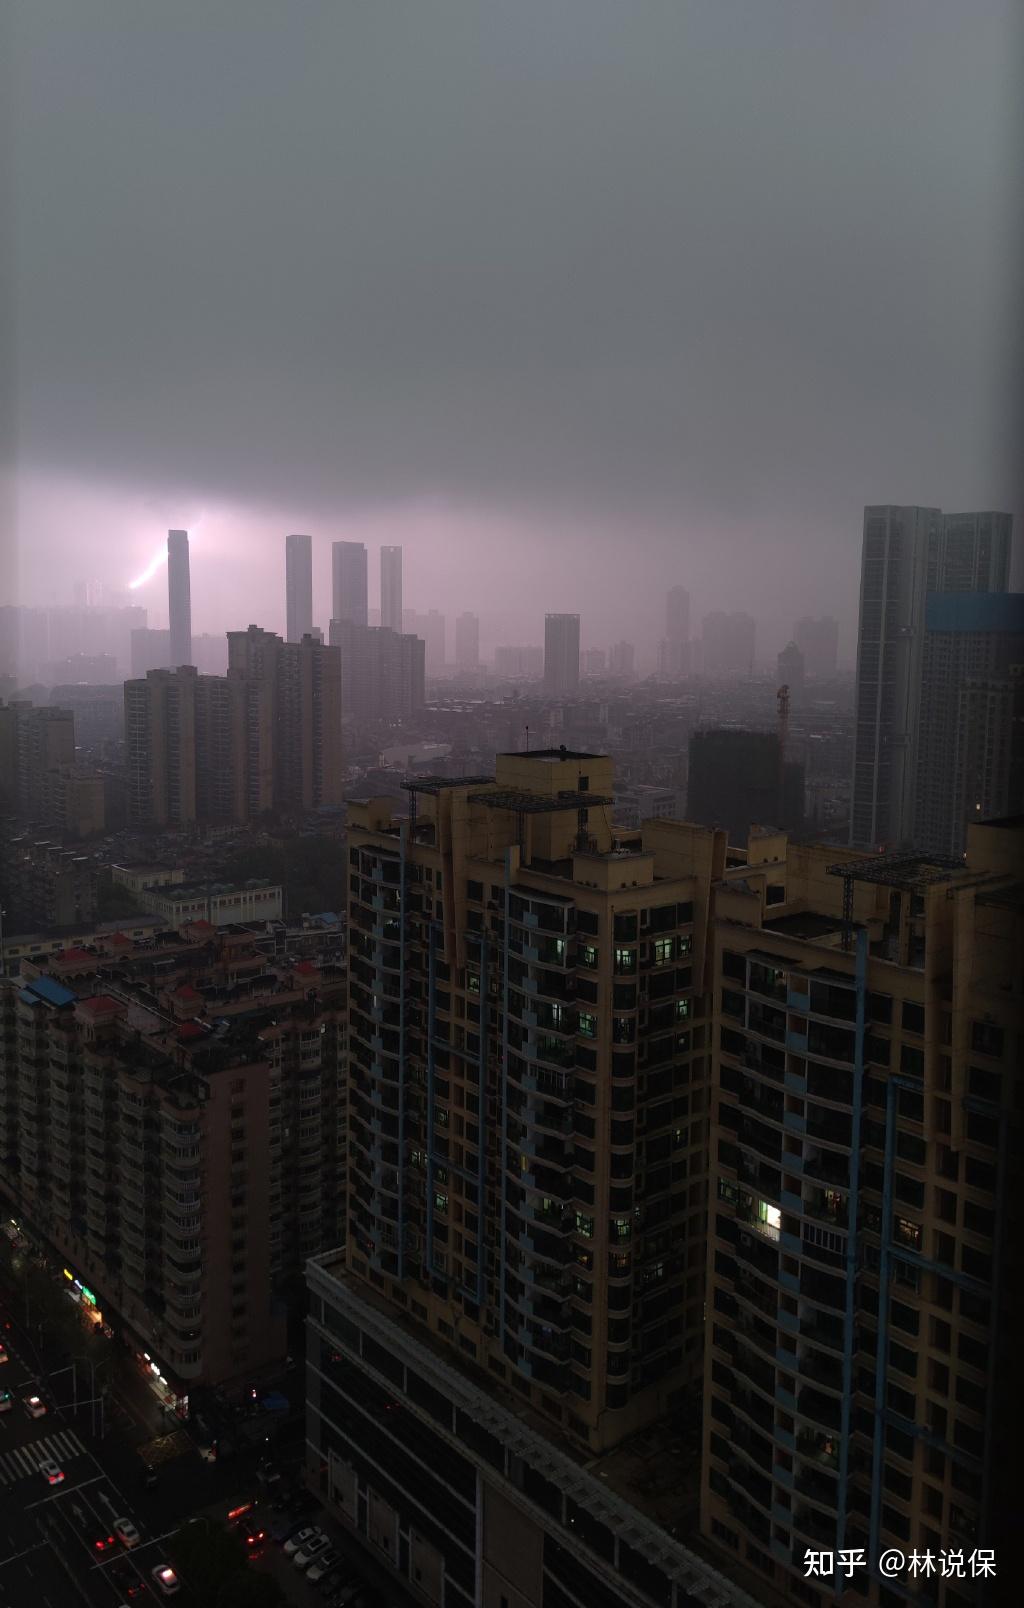 又是郑州! 白天下暴雨瞬间成黑夜 罕见绿色天空 - 2022年7月26日 北美华人网存档 - 看帖神器